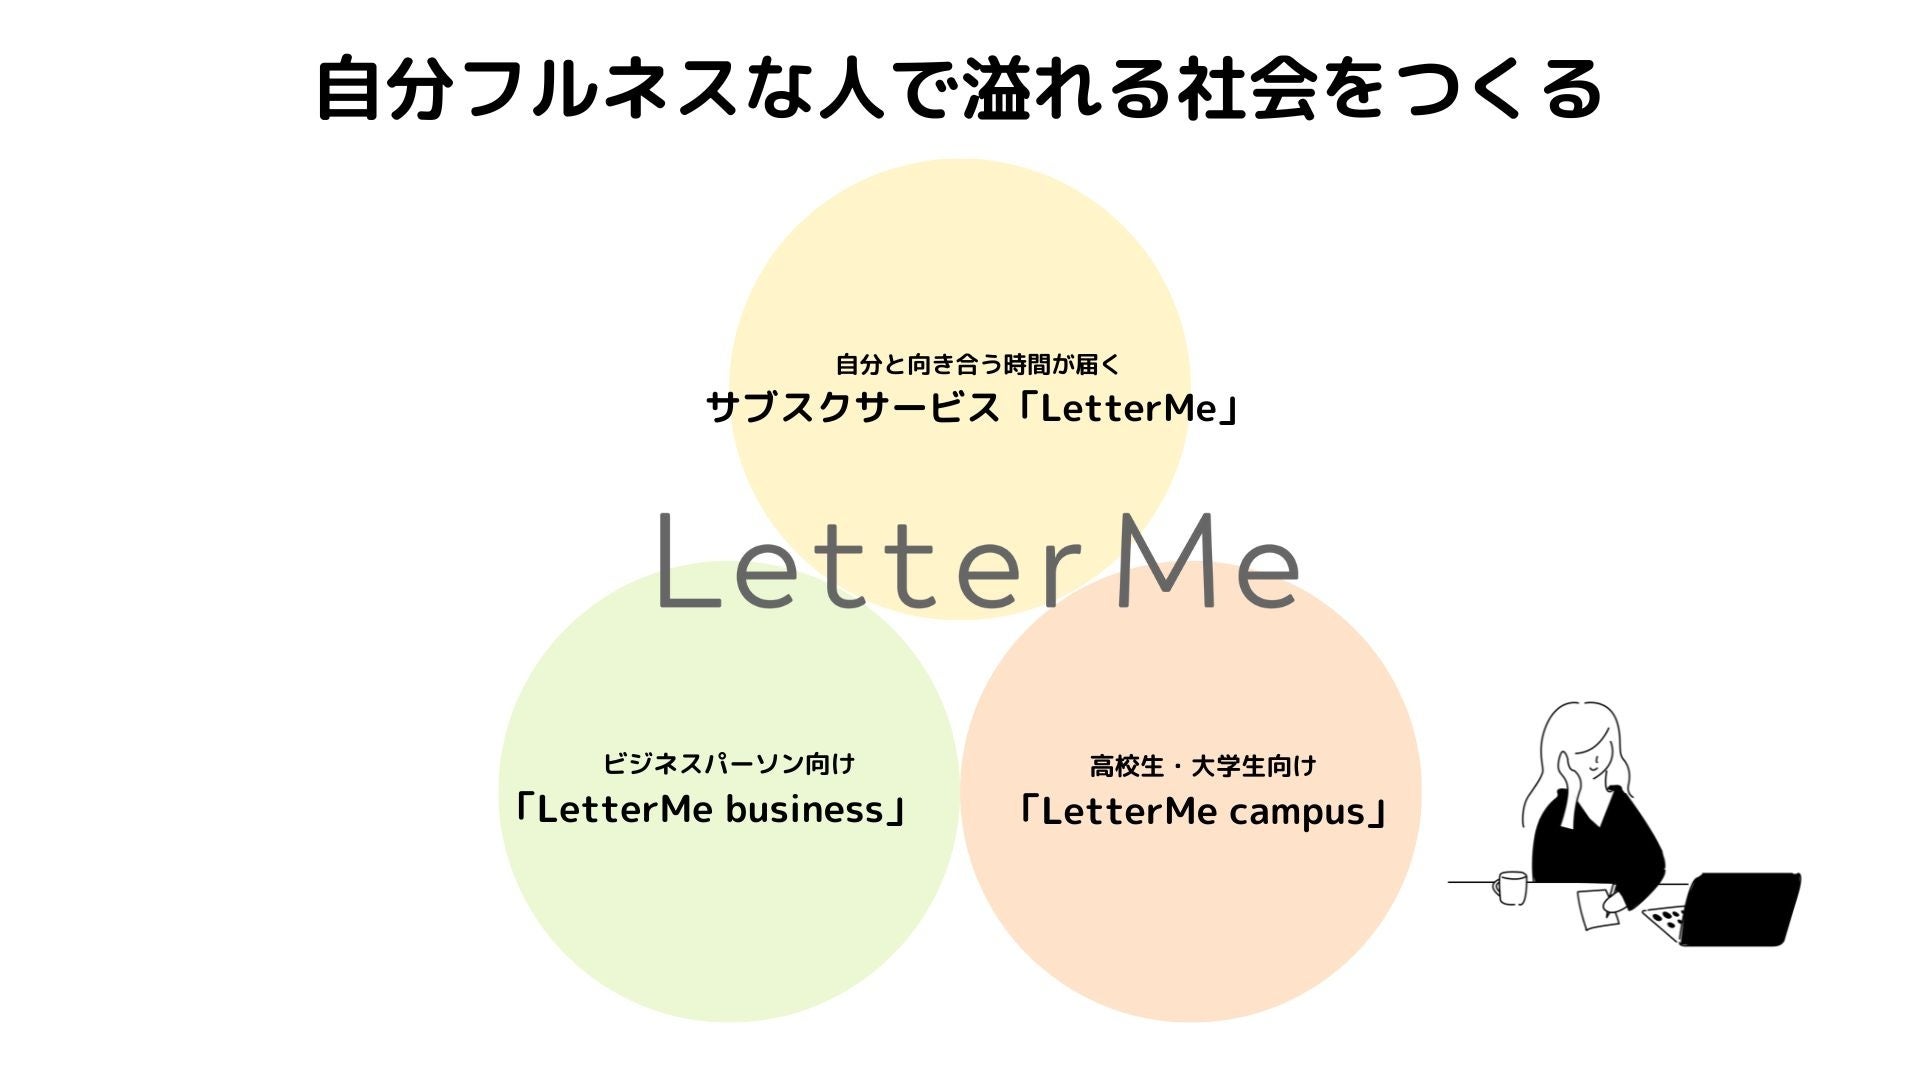 自分への手紙研究の専門家、筑波大学千島先生の「自分への手紙の効果」インタビュー記事公開